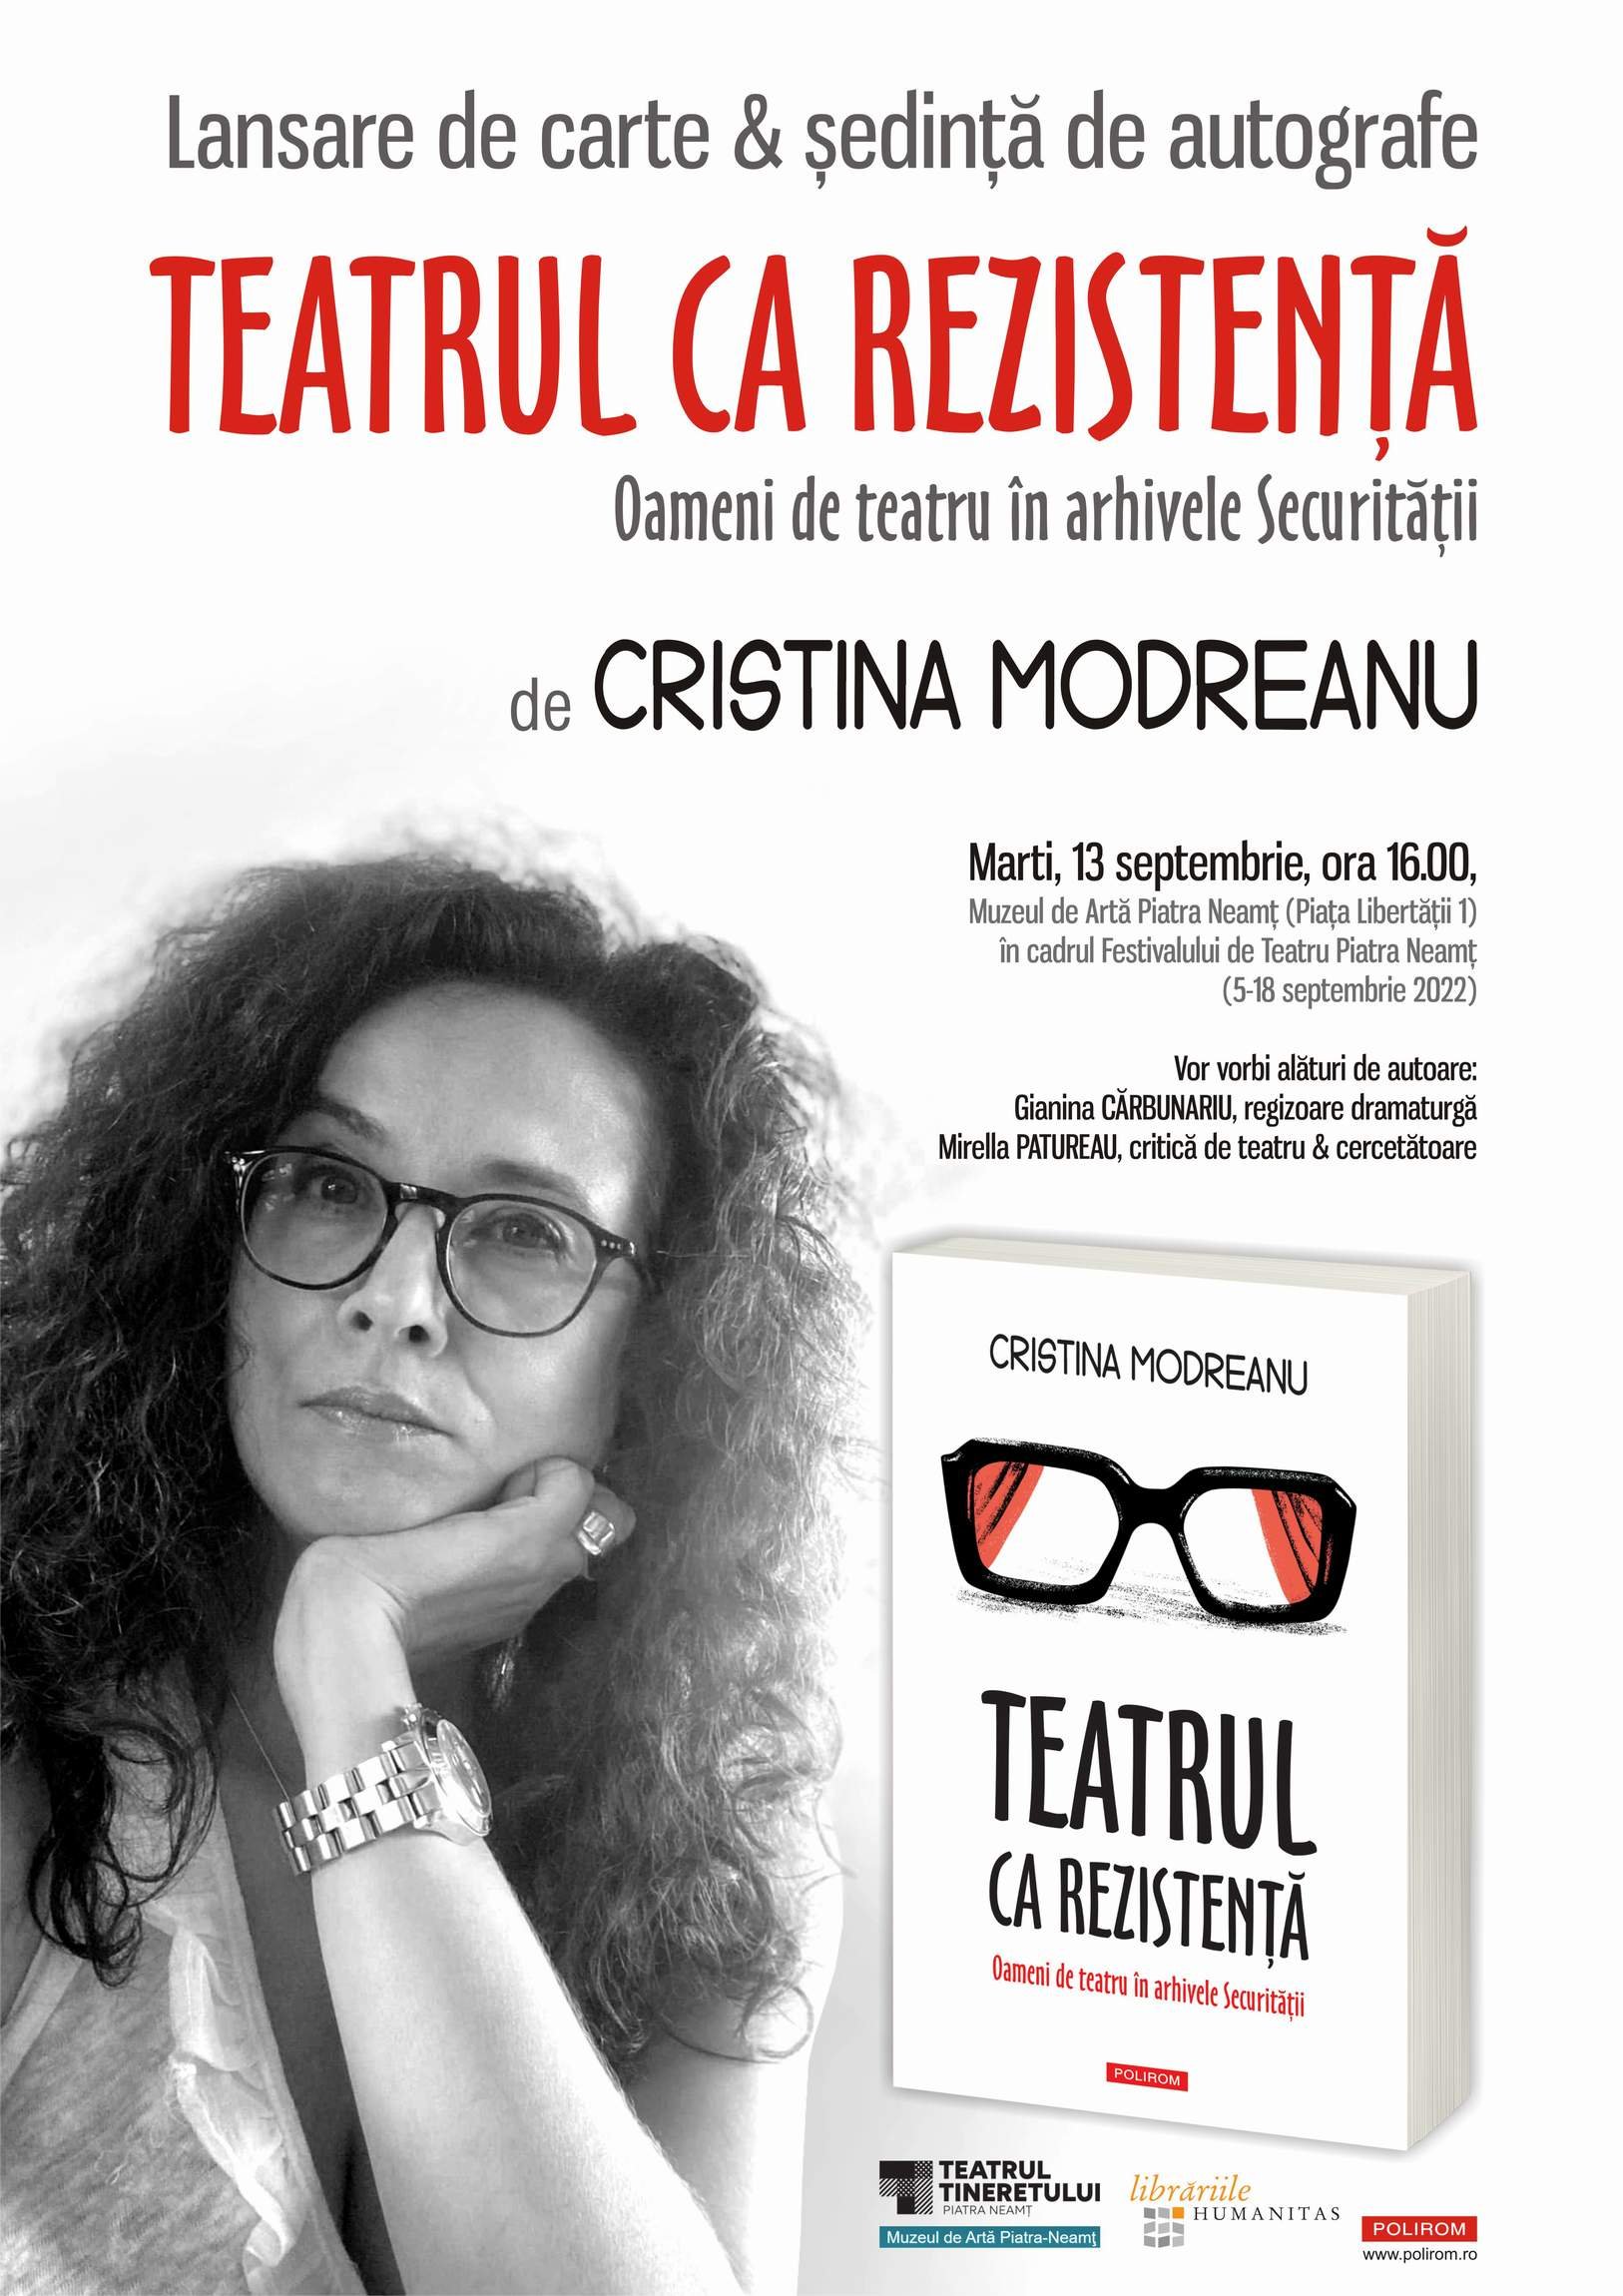  Teatrul văzut prin lentila Securității: Lansare de carte la Festivalul de Teatru Piatra Neamț